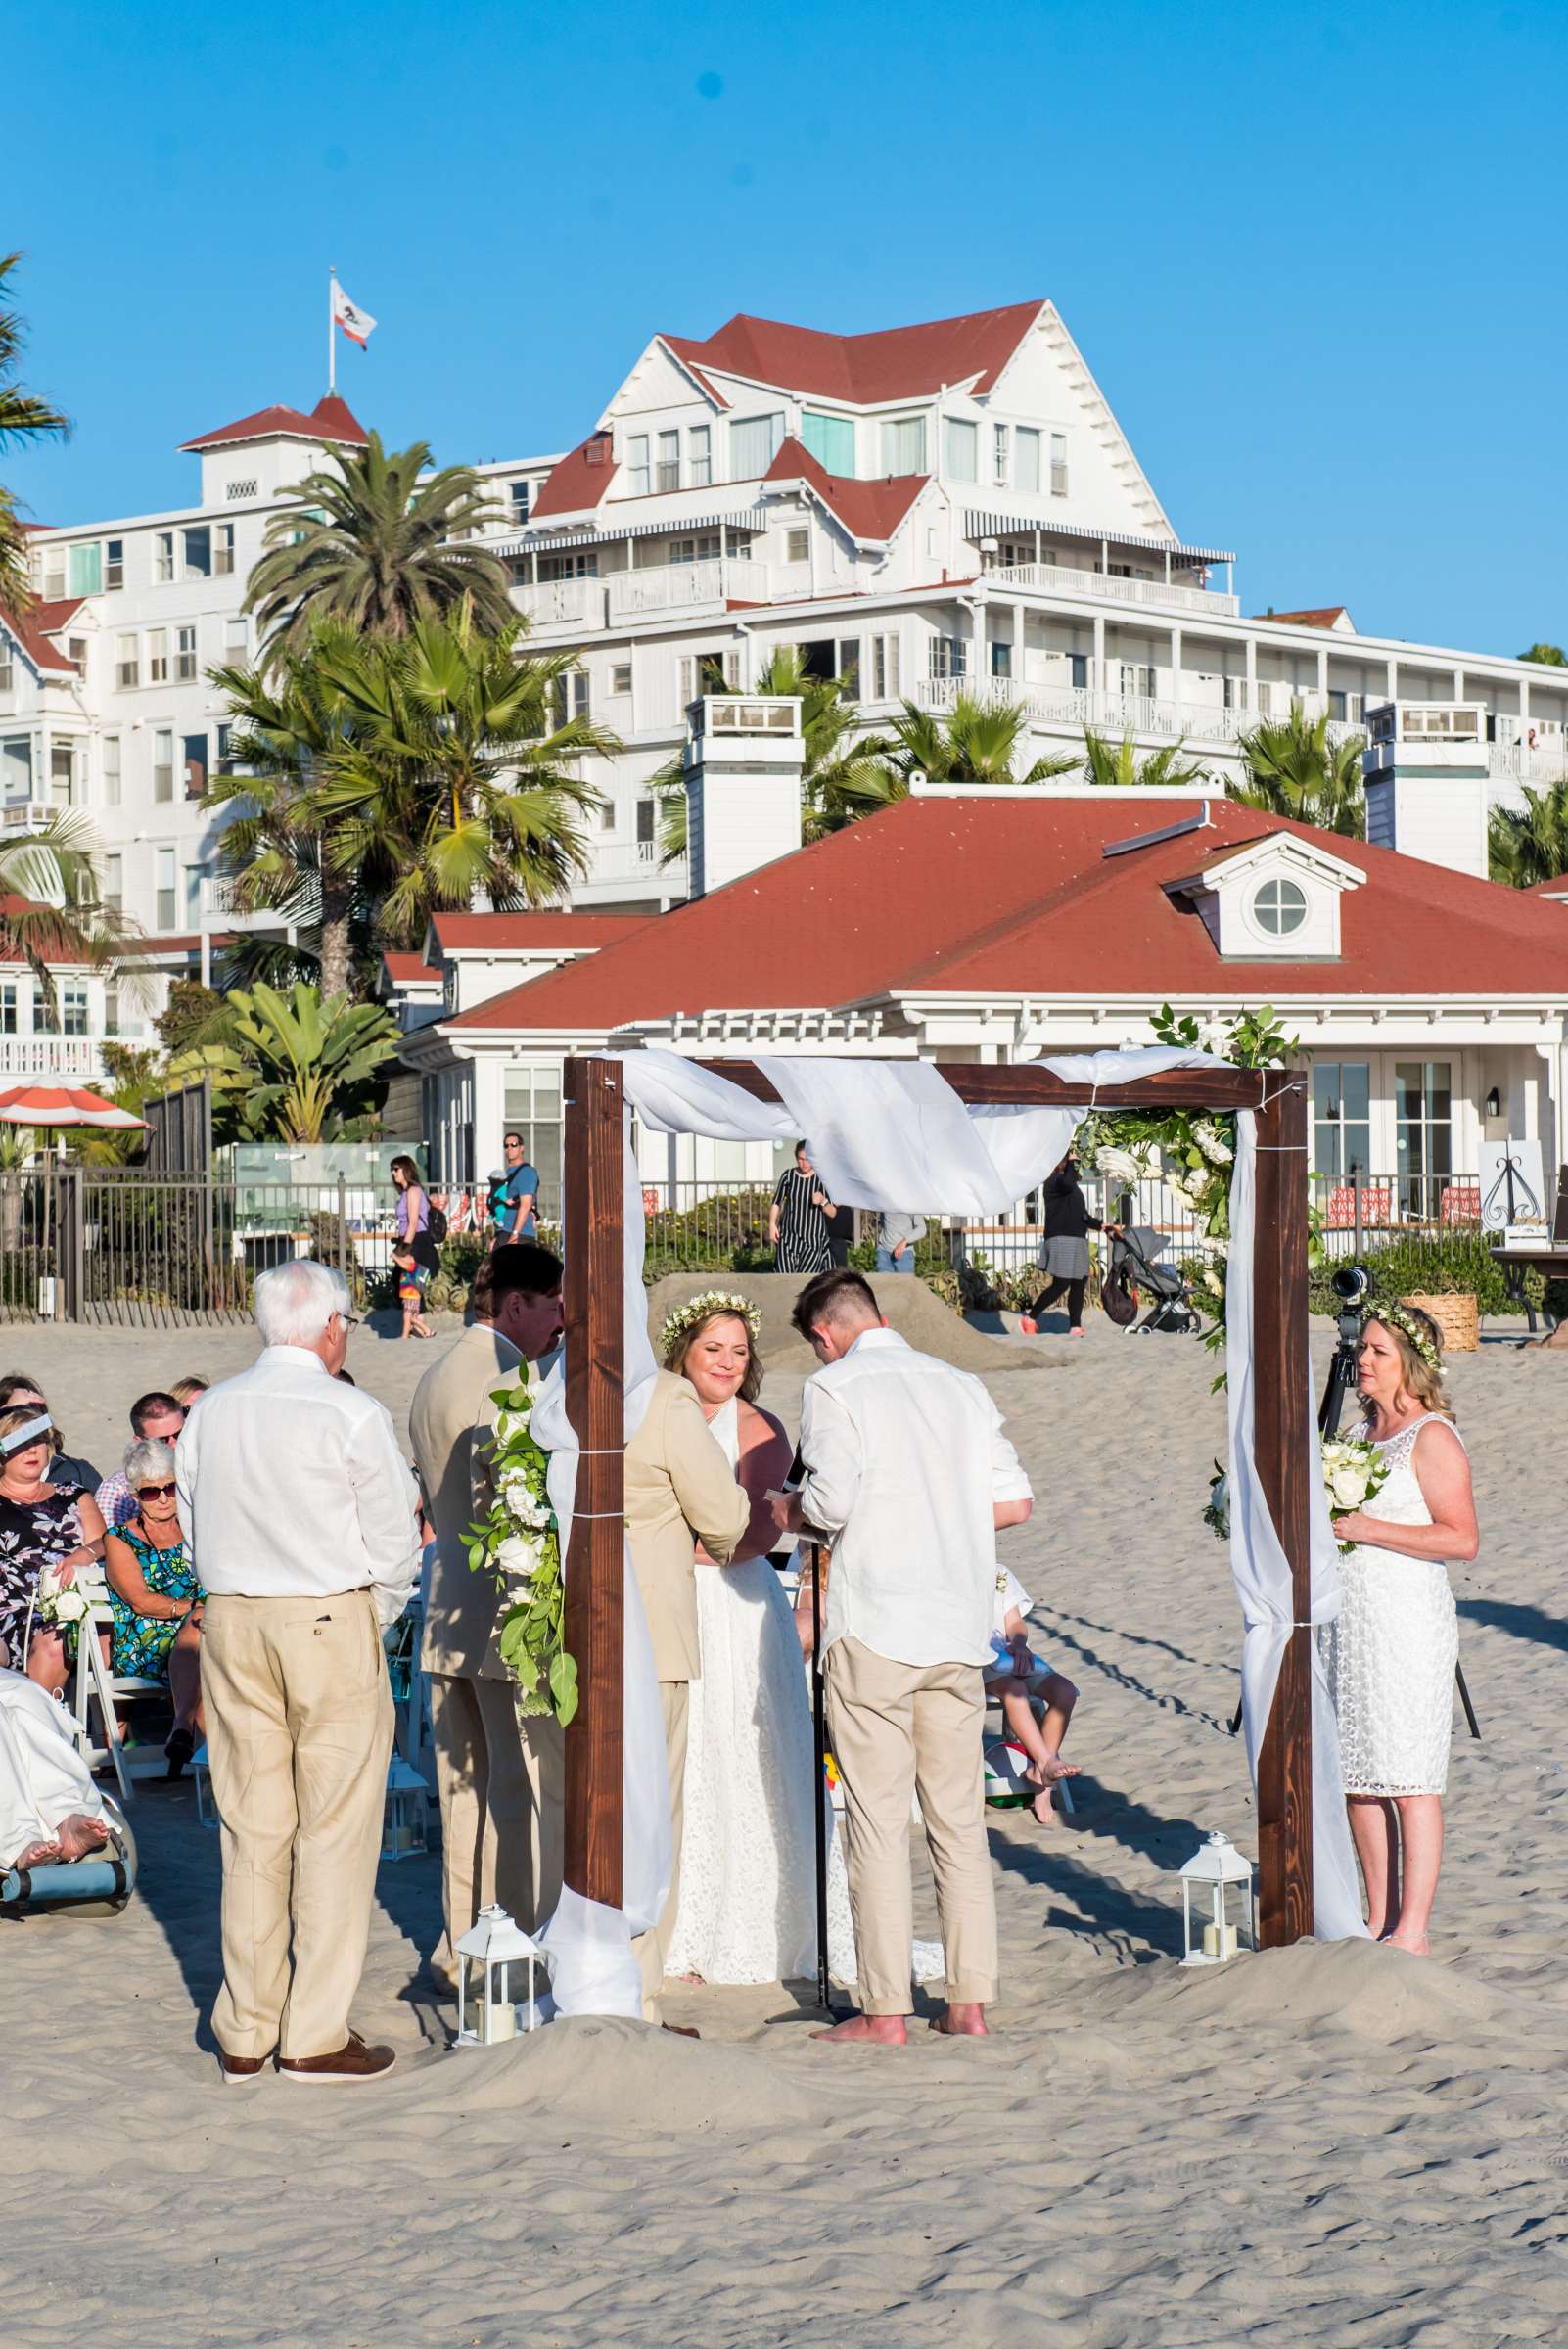 Hotel Del Coronado Wedding, Danielle and Glenn Wedding Photo #36 by True Photography